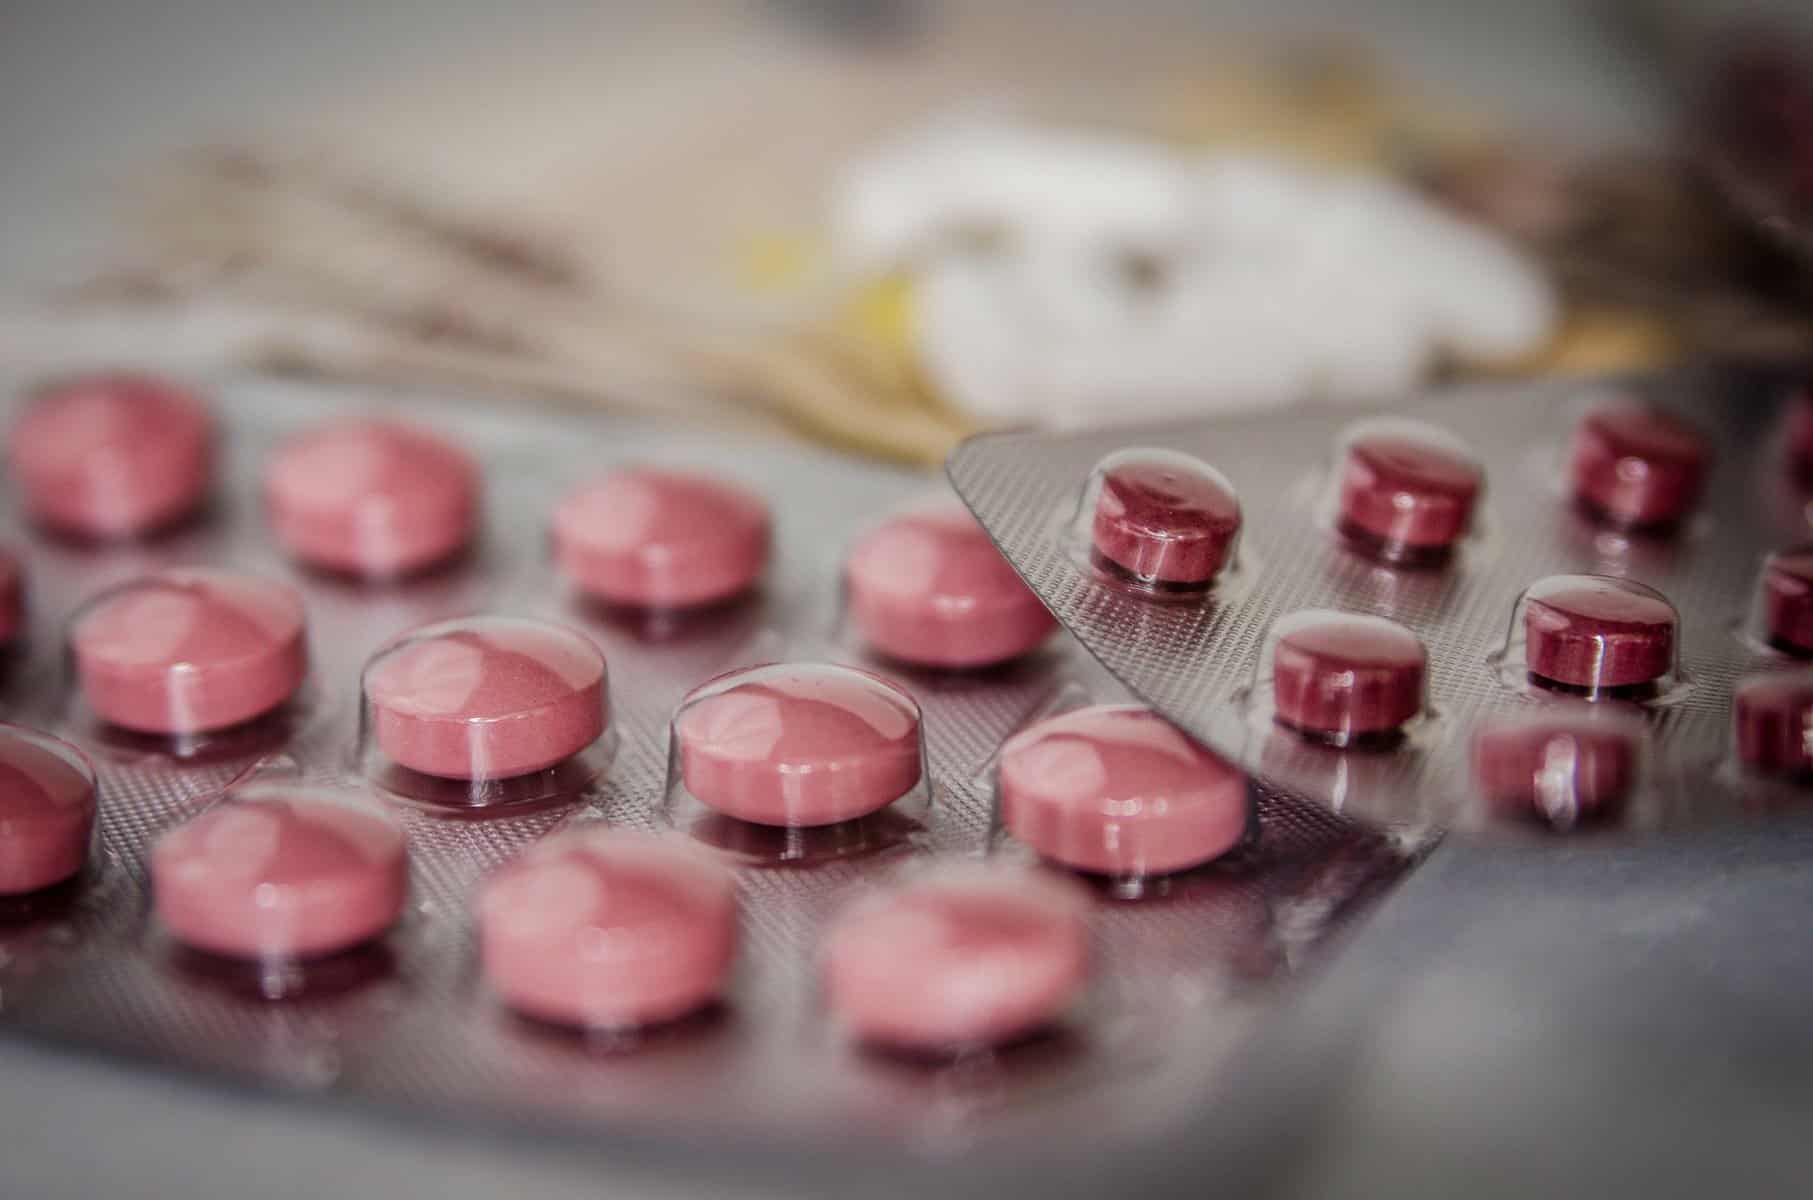 Sind Advil und andere Schmerzmittel auf Dauer schädlich?